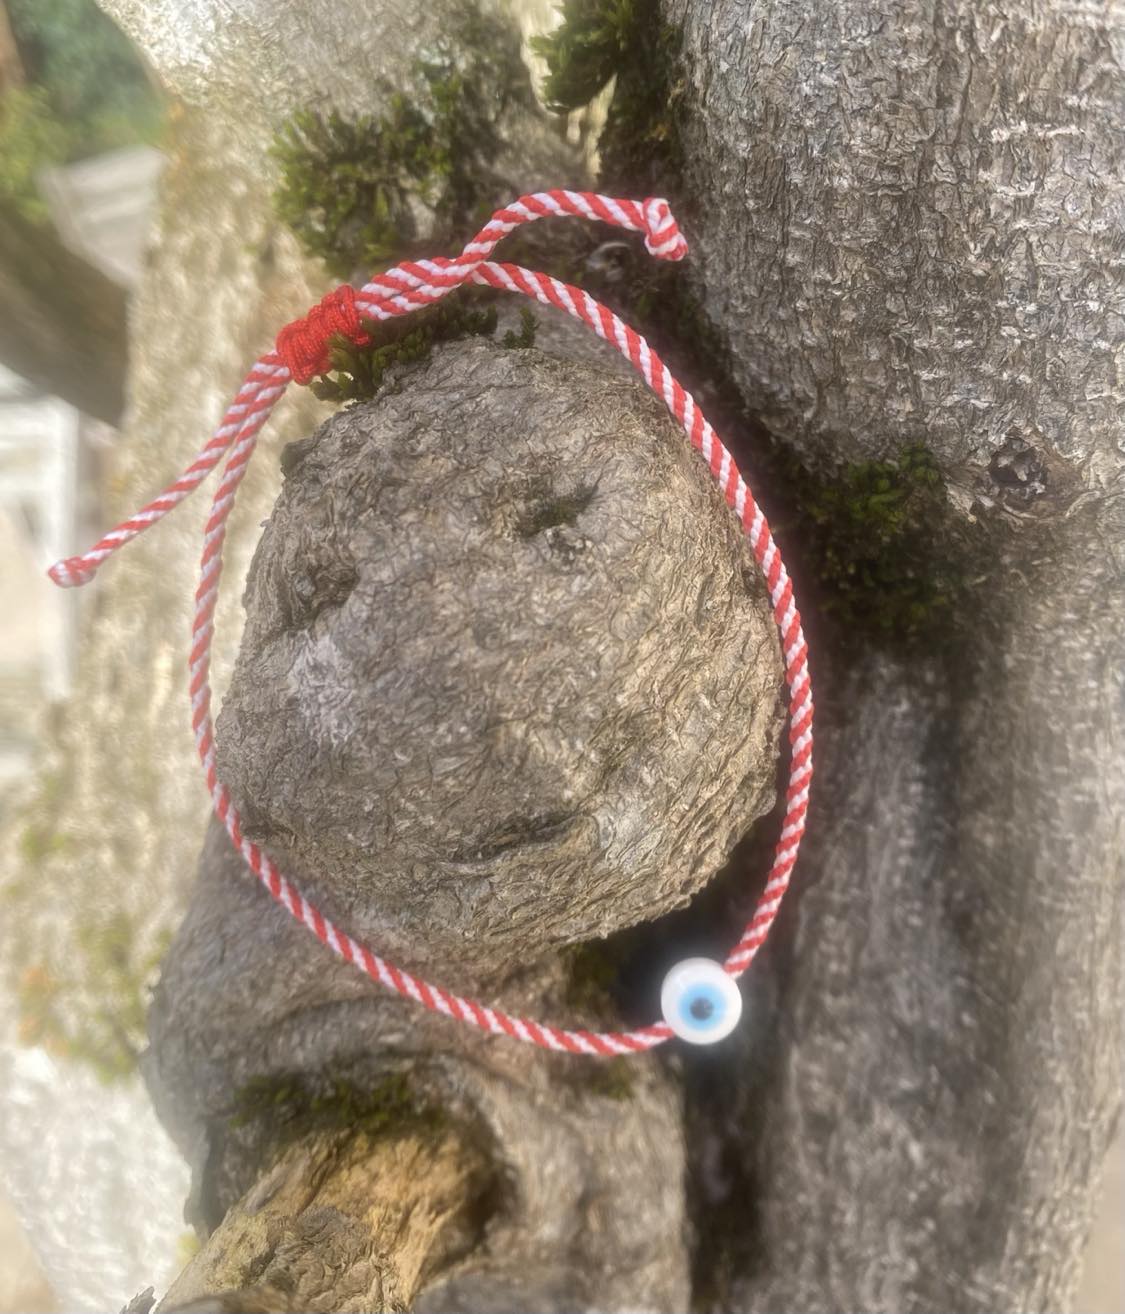 Le petit bracelet traditionnel grec de Martis (Mars)  et son oeil protecteur.   En grec Μαρτης